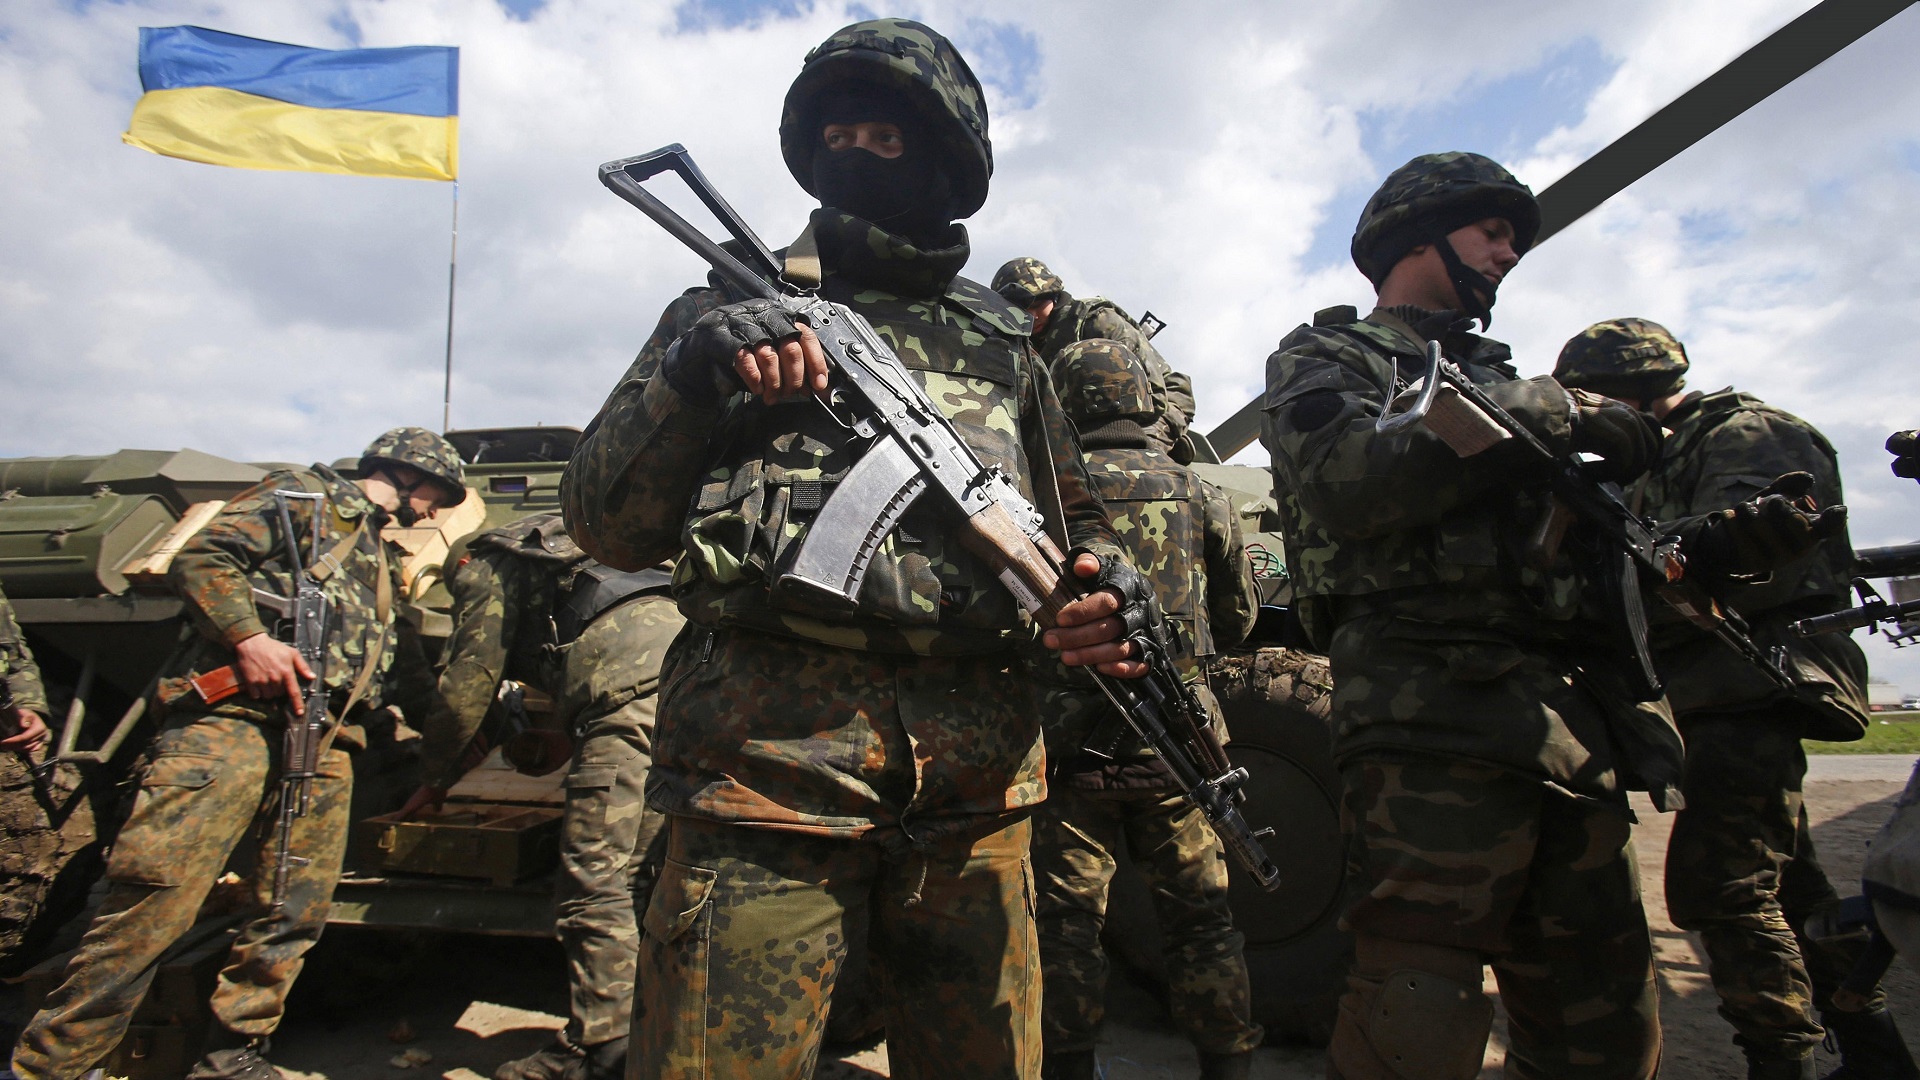 Ukraine soldier military